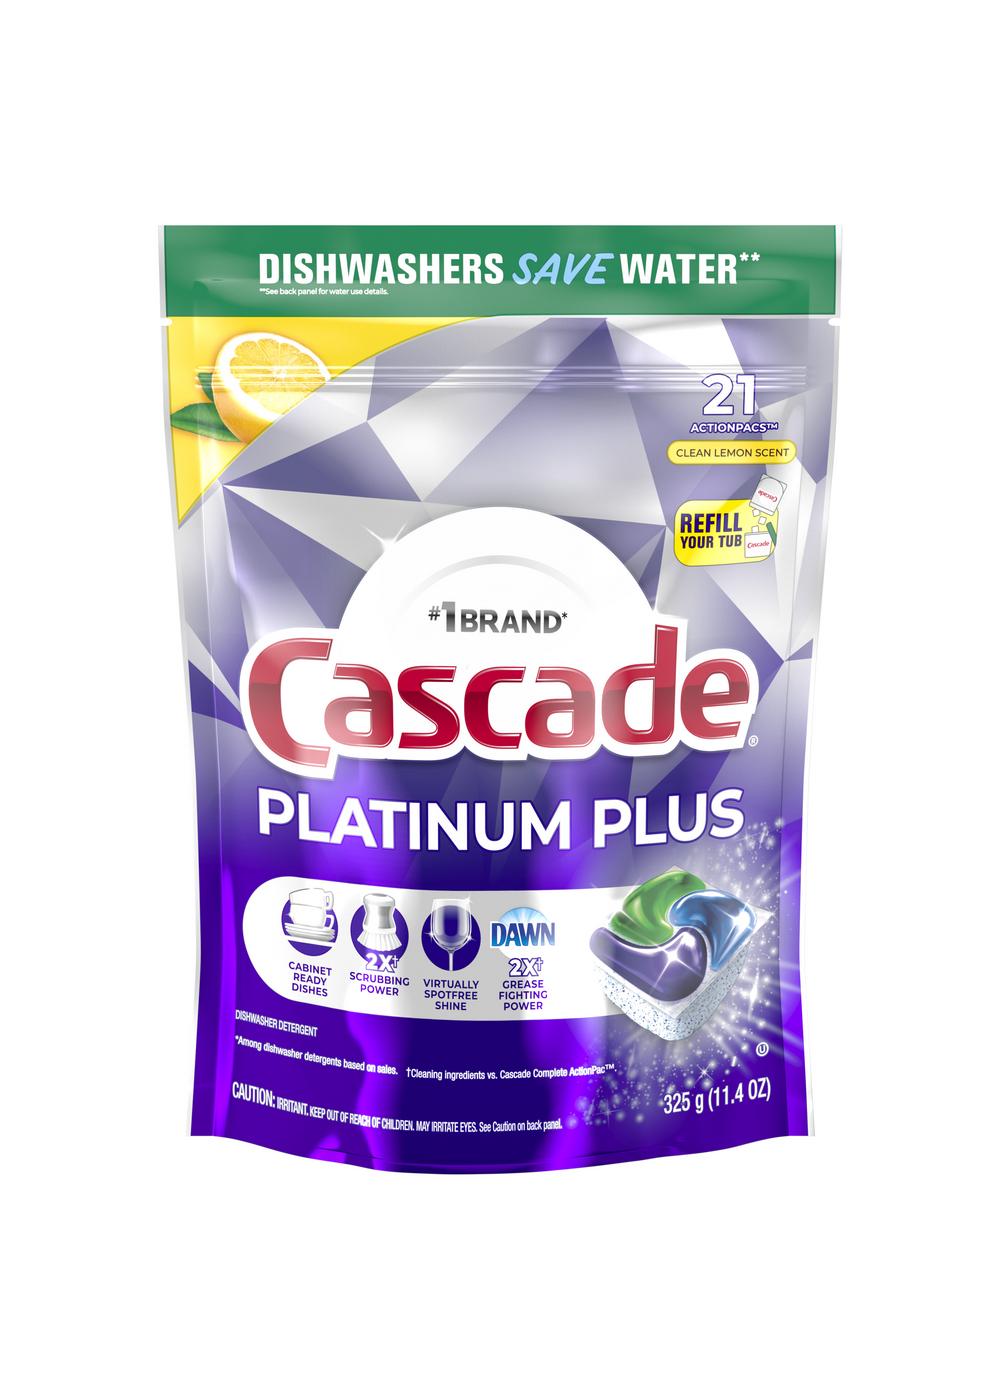 Cascade Platinum Plus Clean Lemon Scent Dishwasher Detergent ActionPacs; image 1 of 2